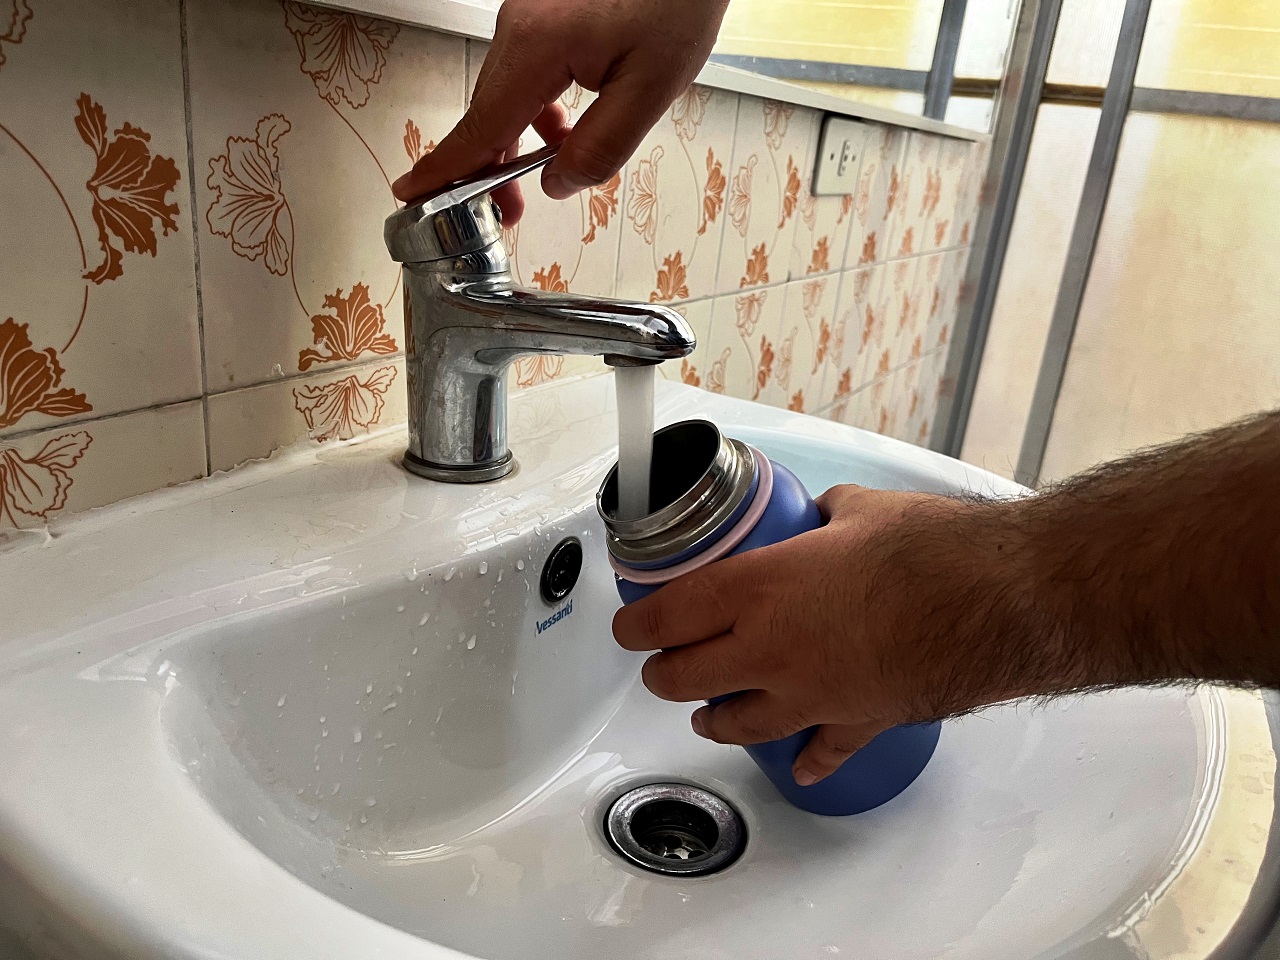 LOS ANDES: Salud municipal de Los Andes entrega consejos para un seguro consumo del agua